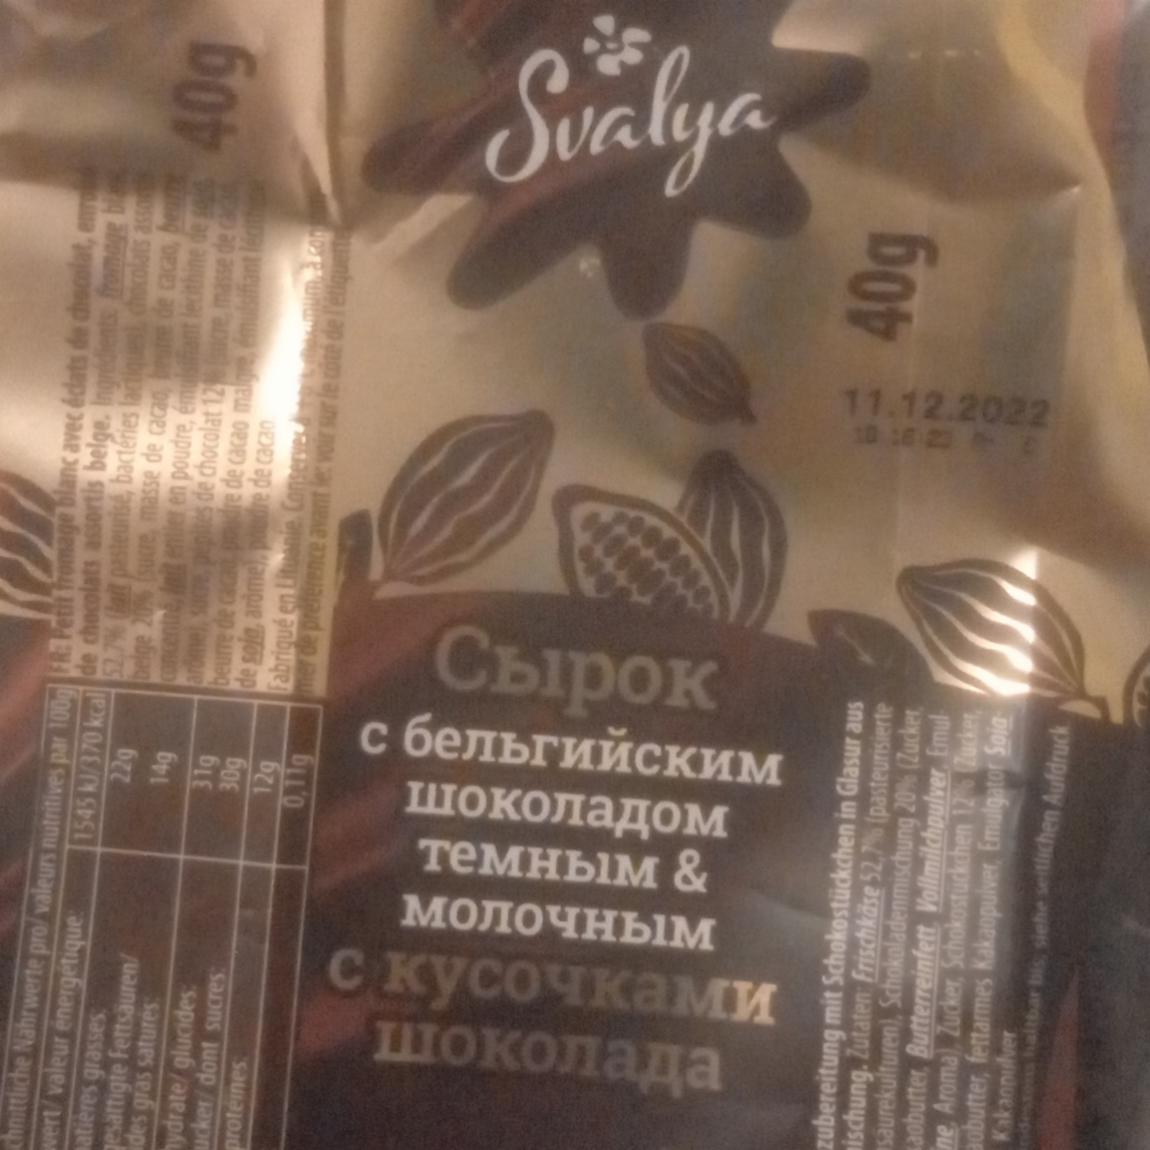 Фото - Сырок с бельгийским шоколадом черным и молочным с кусочками шоколада Svalya